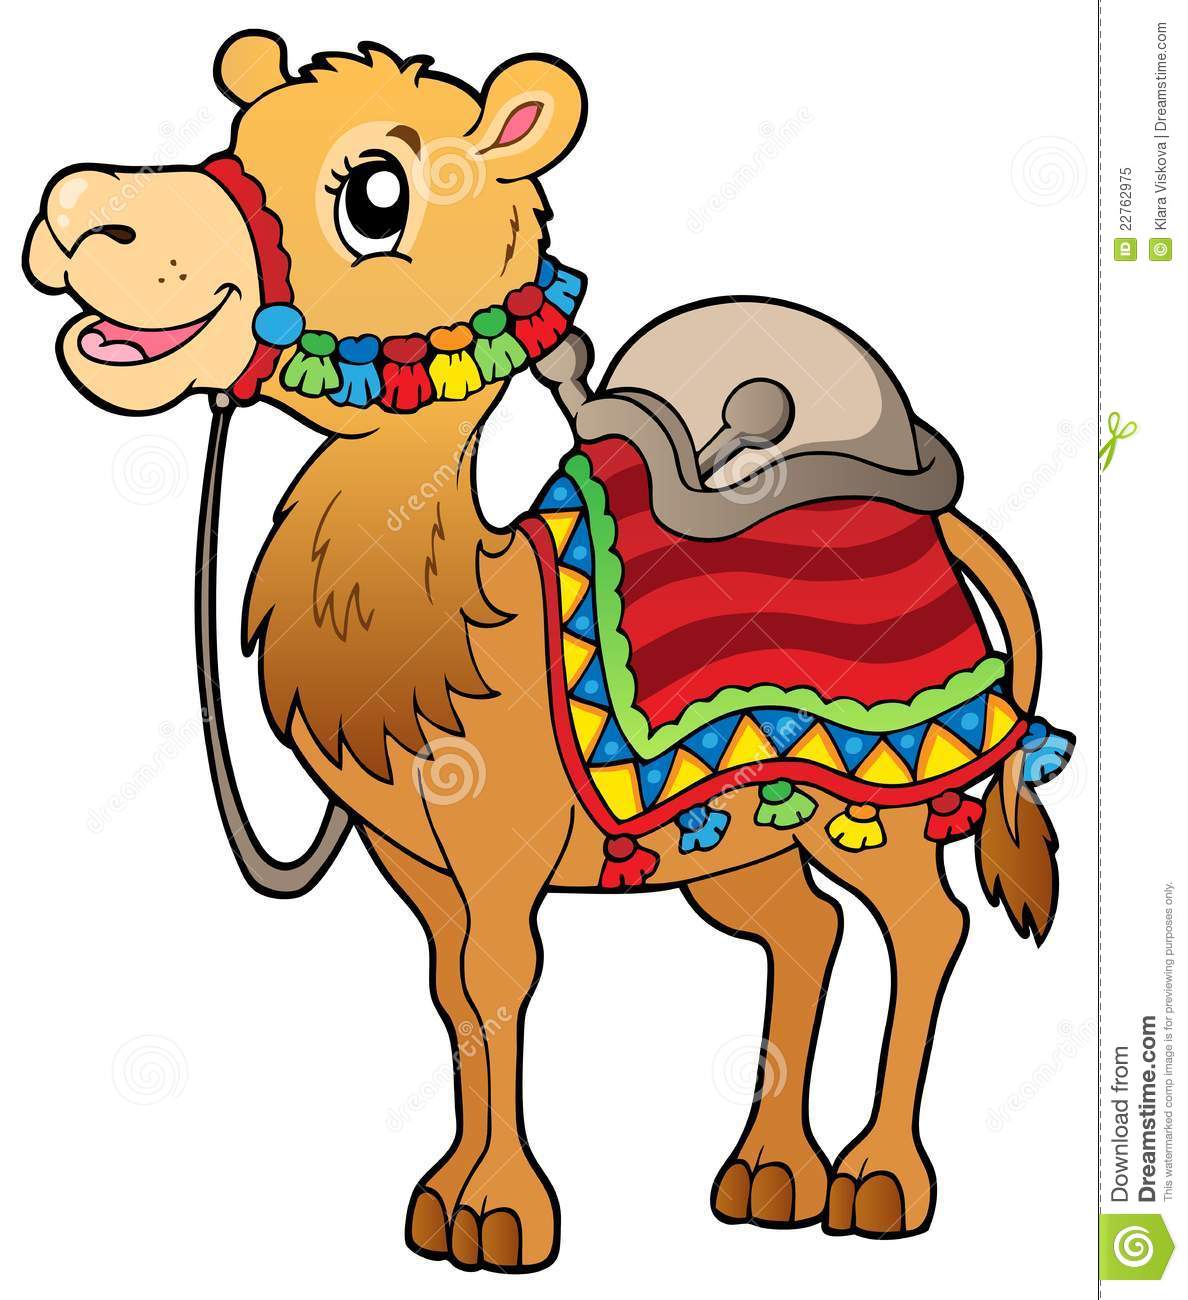 Cartoon Camel With Saddlery Royalty Free Stock Photo   Image  22762975